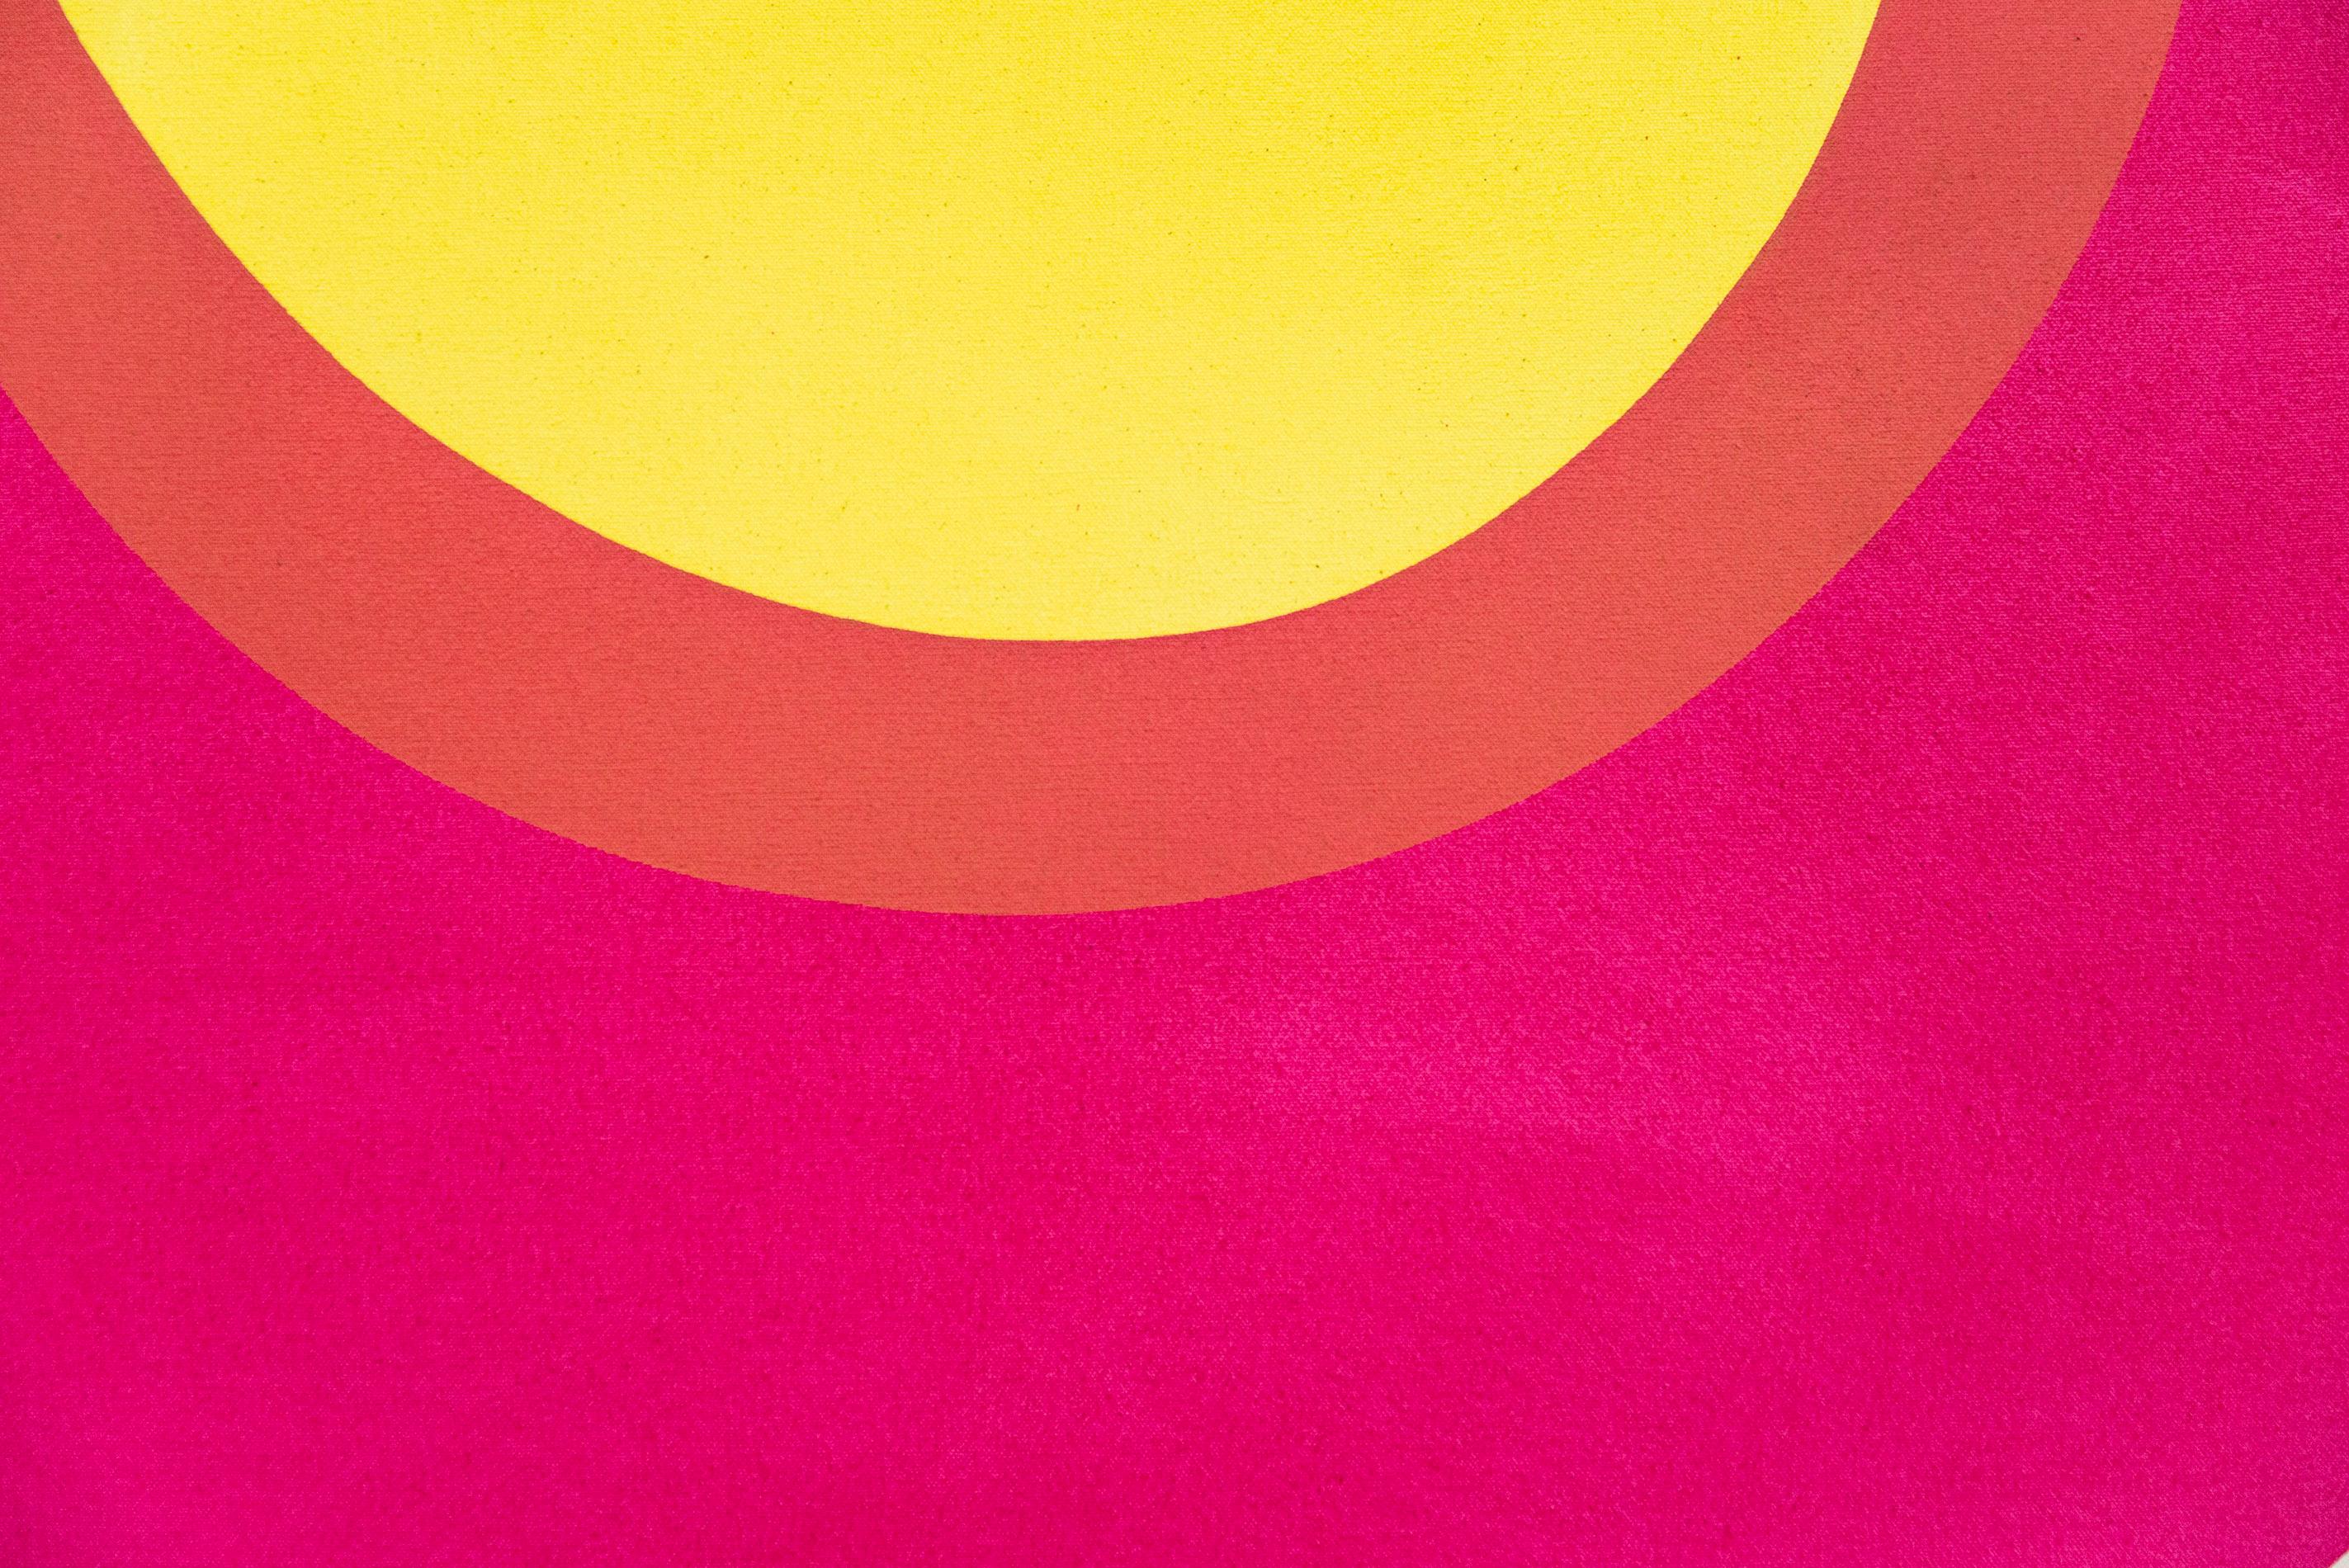 Ein kurzer Aufenthalt Nr. 4 – leuchtende Farben, abstrakt, minimalistisch, Acryl auf Leinwand 3